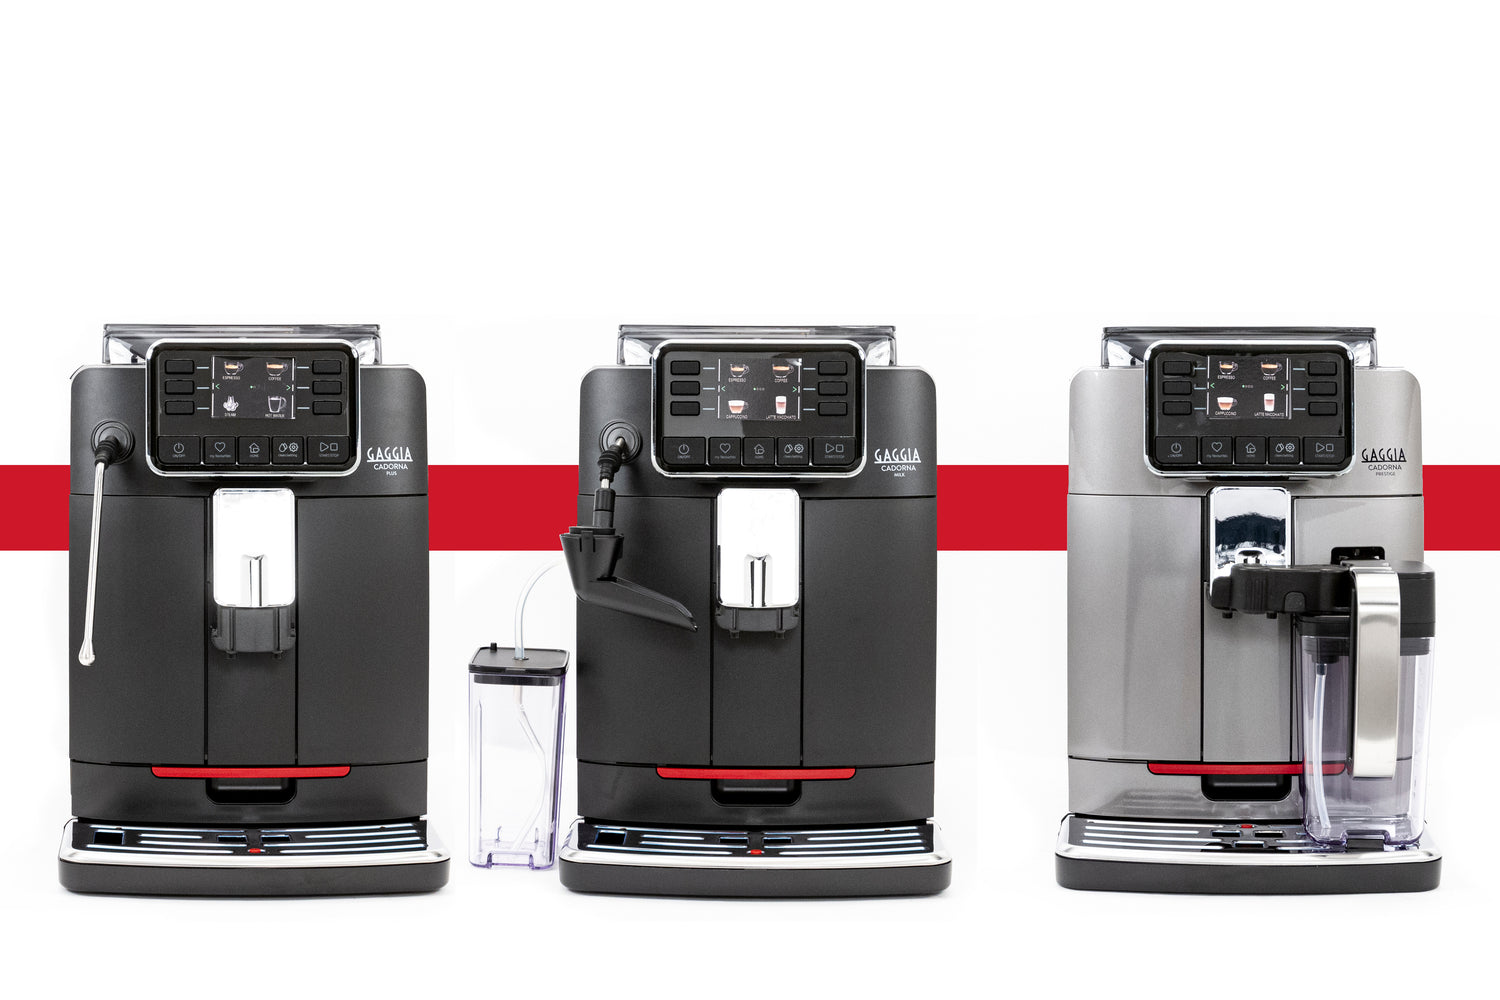 Gaggia Releases New Automatic Espresso Machines, the Cadorna Series